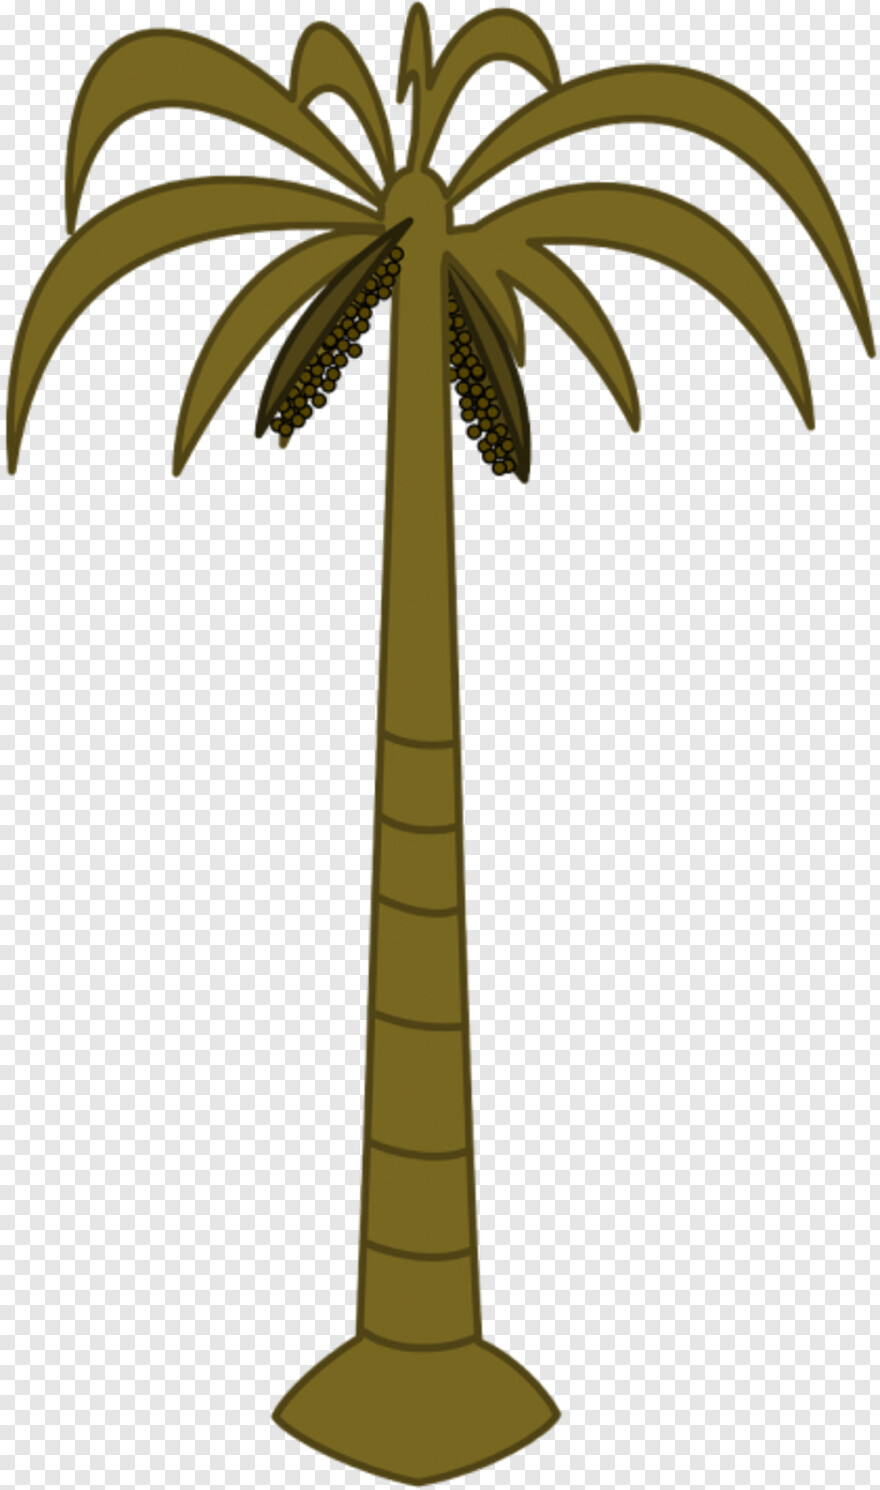 palm-tree # 460507